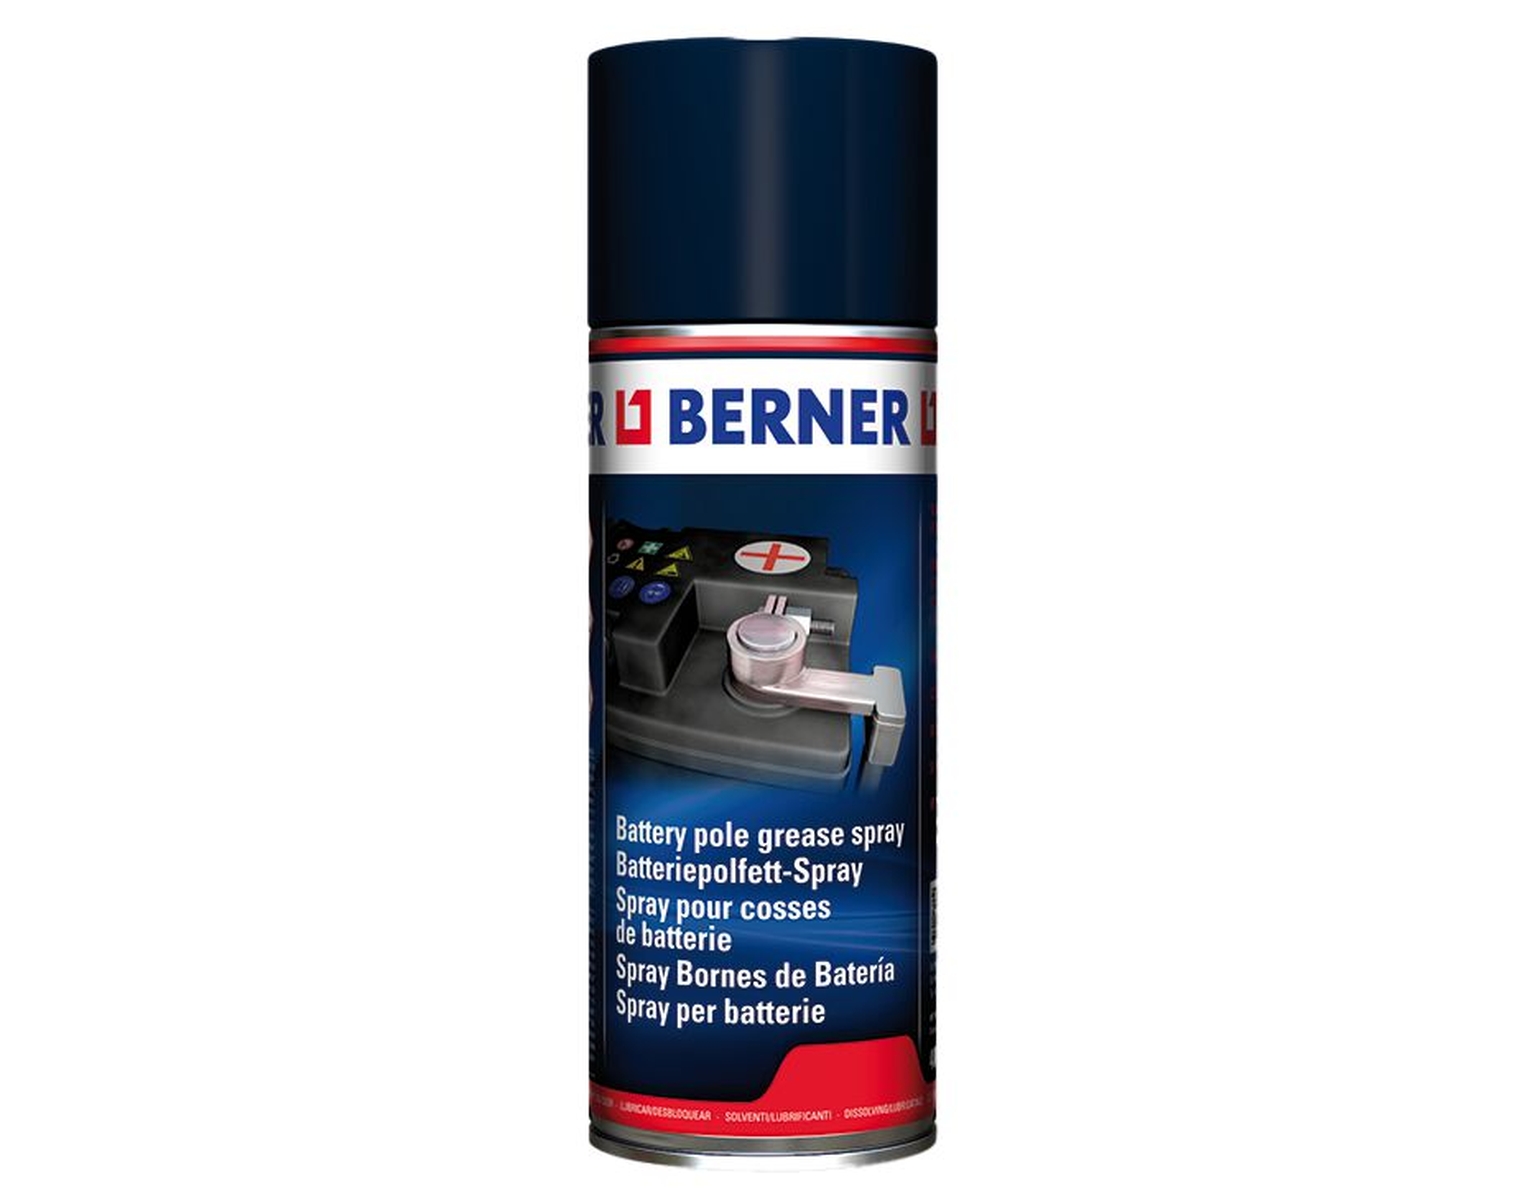 BERNER Batteriepolfett-Spray, 400 g